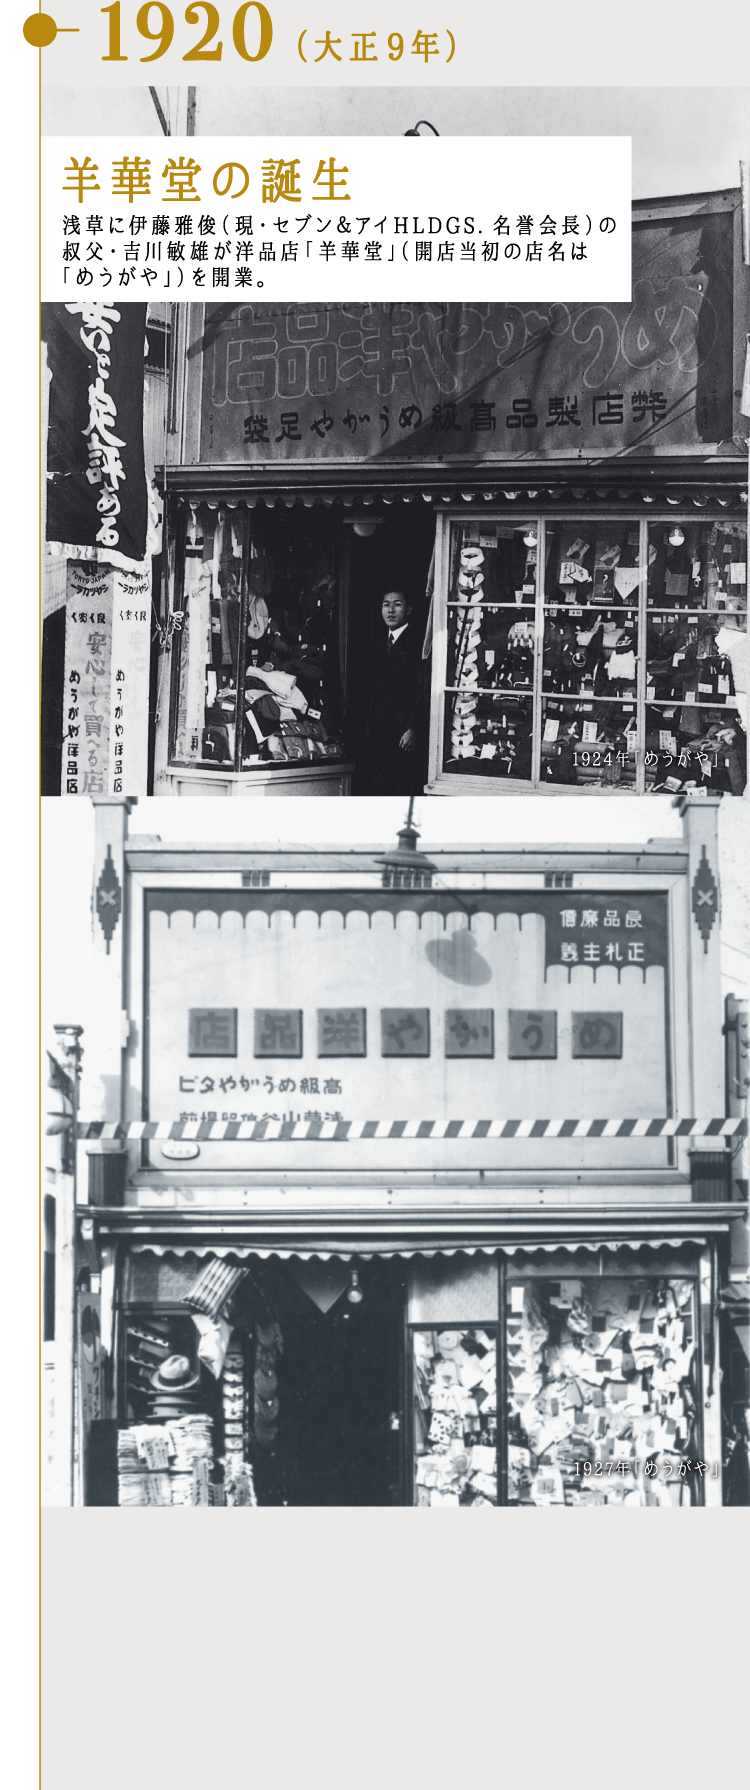 1920（大正9年）羊華堂の誕生 浅草に伊藤雅俊（現・セブン＆アイHLDGS. 名誉会長）の叔父・吉川敏雄が洋品店「羊華堂」（開店当初の店名は「めうがや」）を開業。